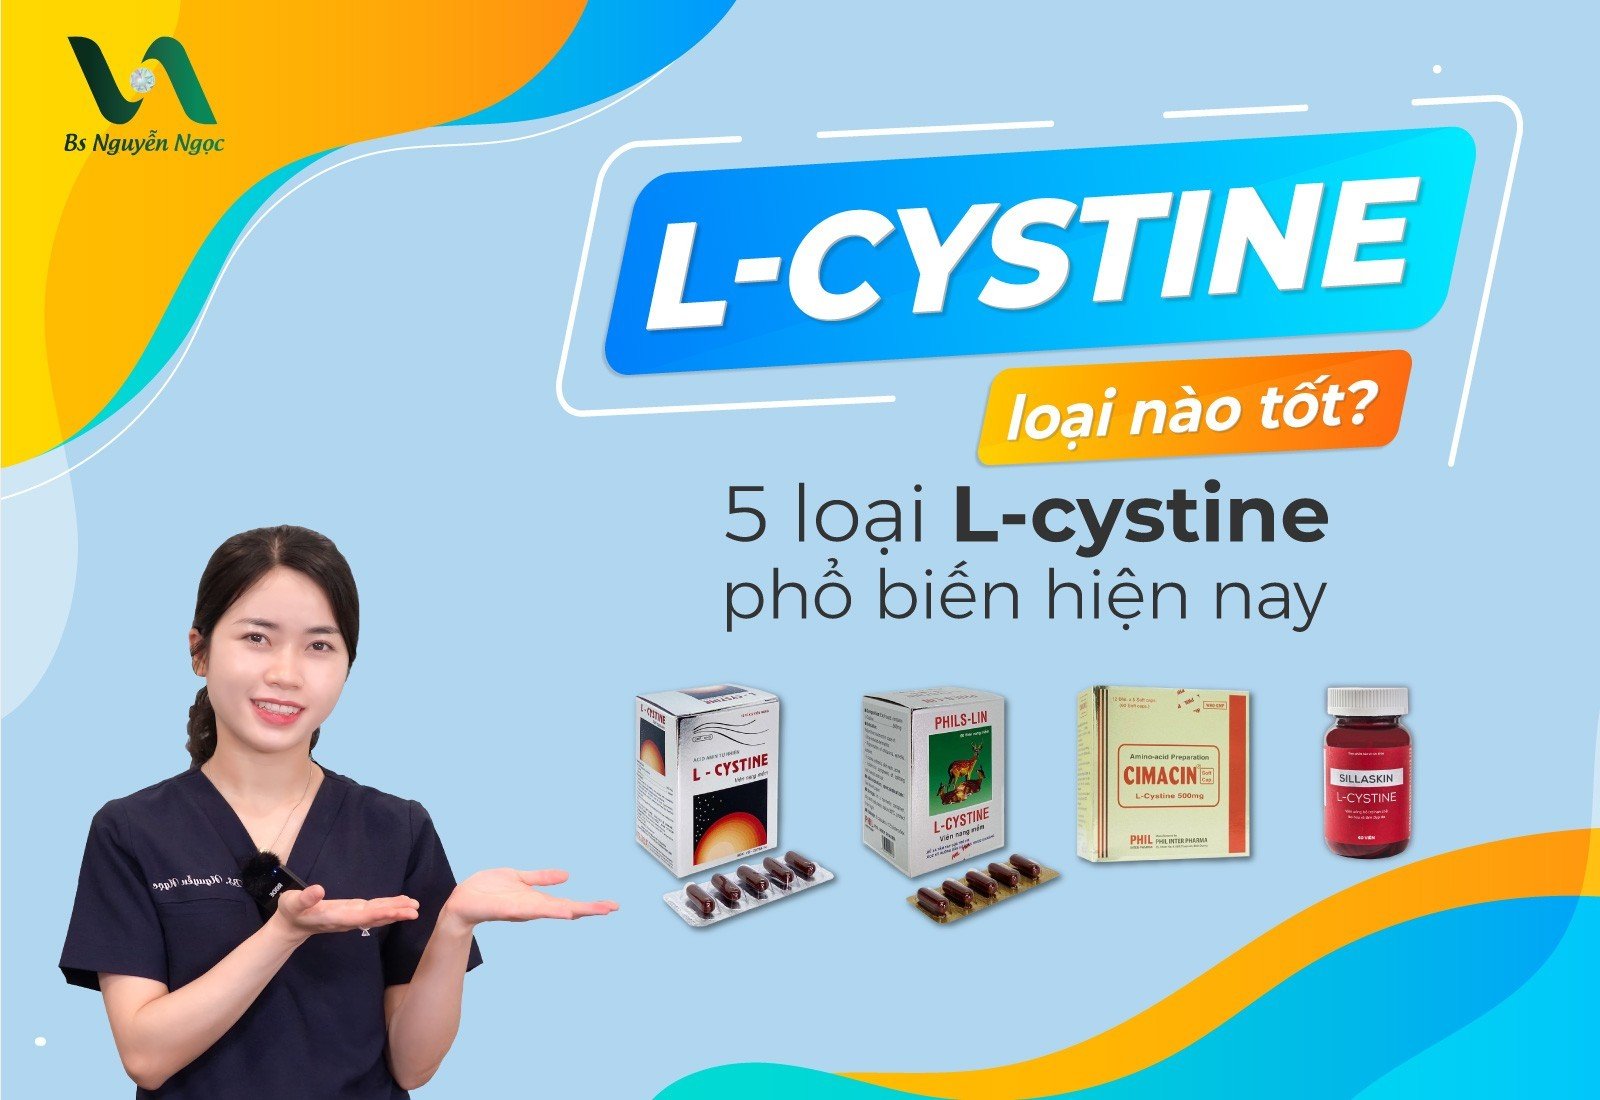 L-cystine loại nào tốt?